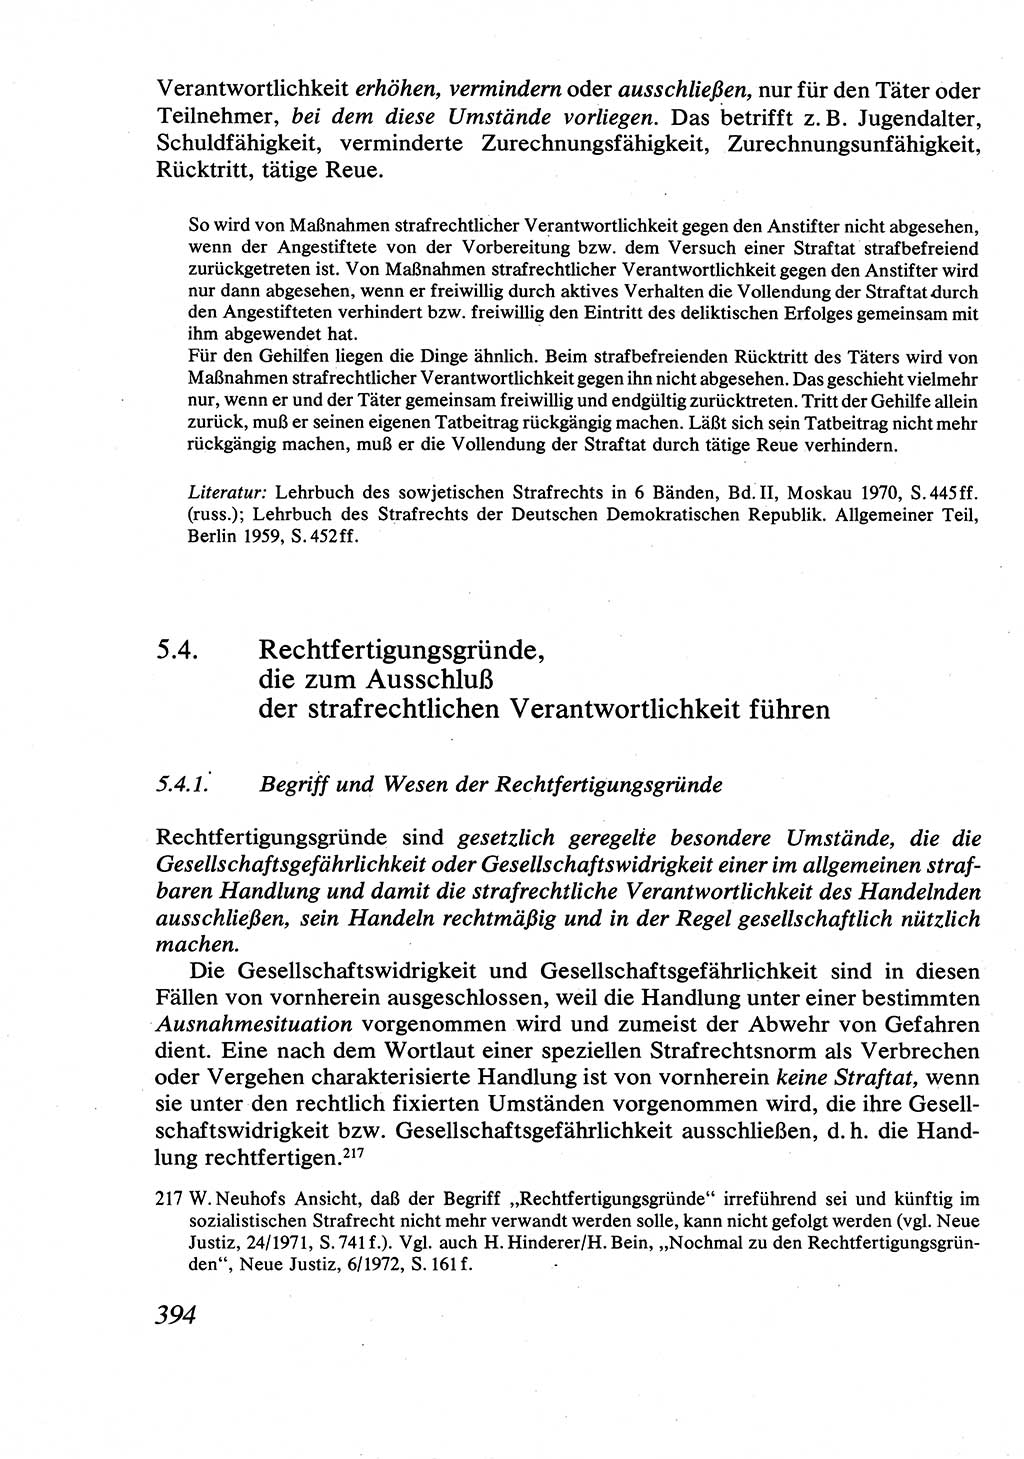 Strafrecht [Deutsche Demokratische Republik (DDR)], Allgemeiner Teil, Lehrbuch 1976, Seite 394 (Strafr. DDR AT Lb. 1976, S. 394)